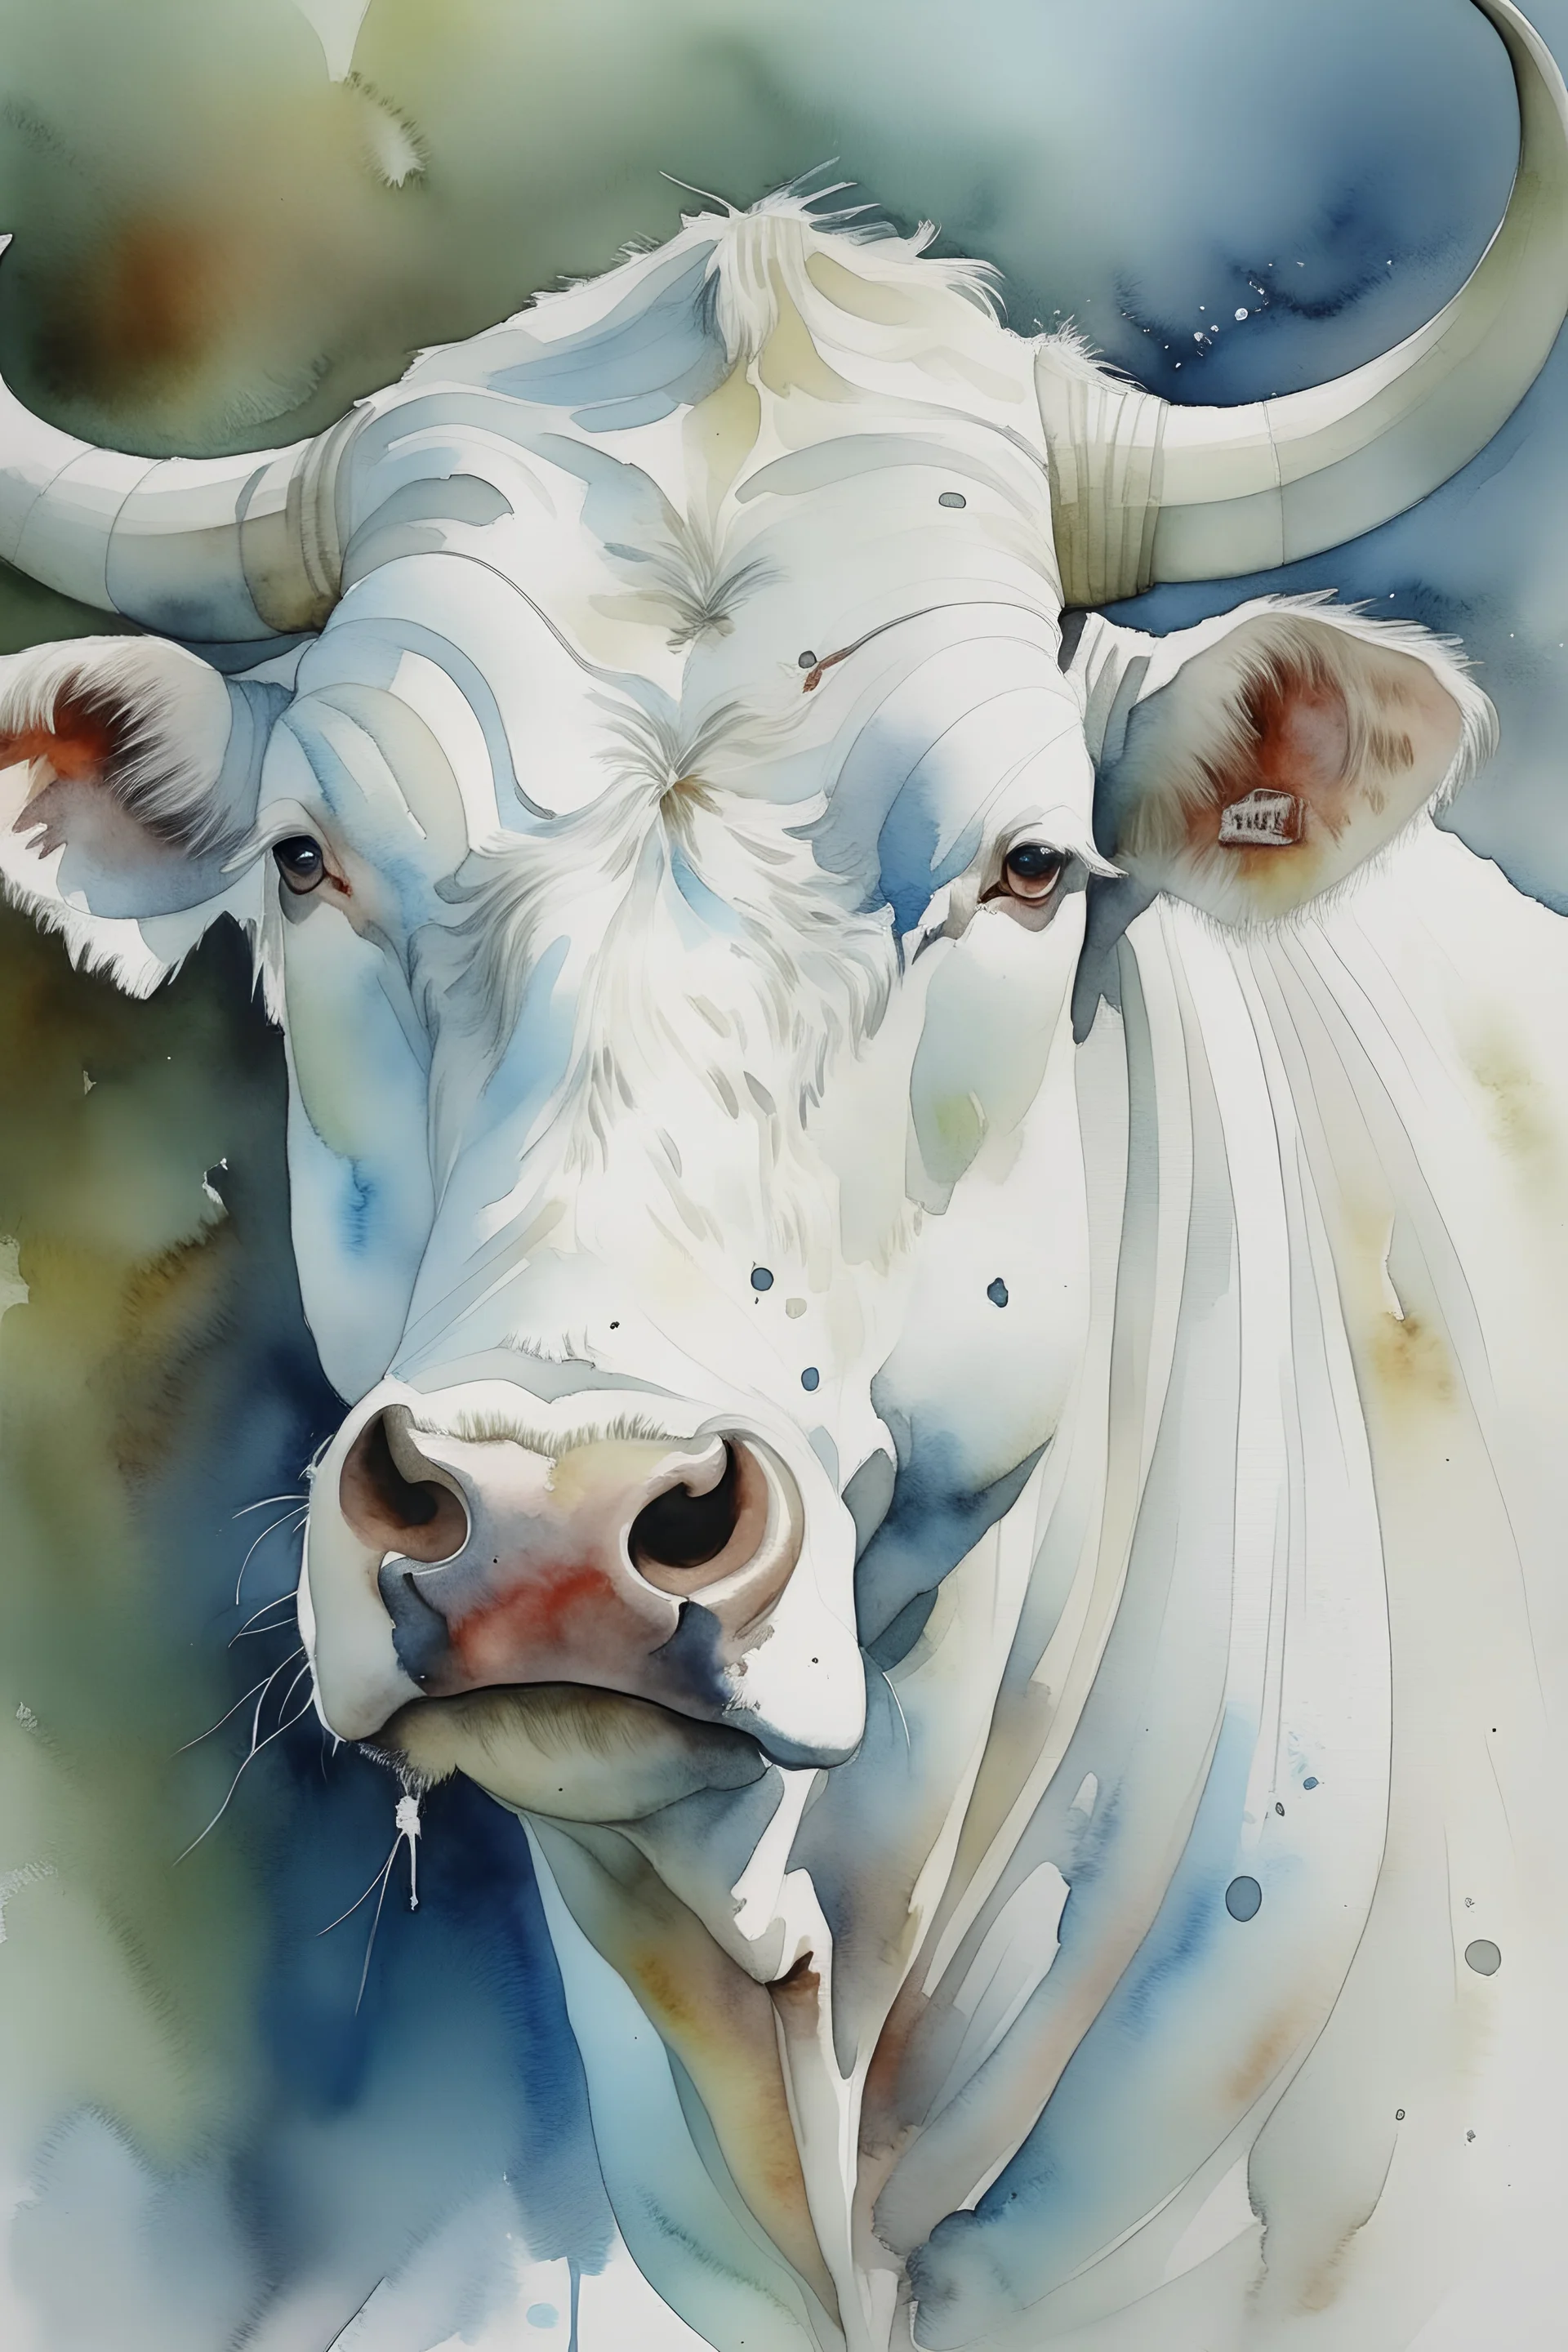 készíts egy akvarell festményt az alábbiak szerint: fehér bika portréja